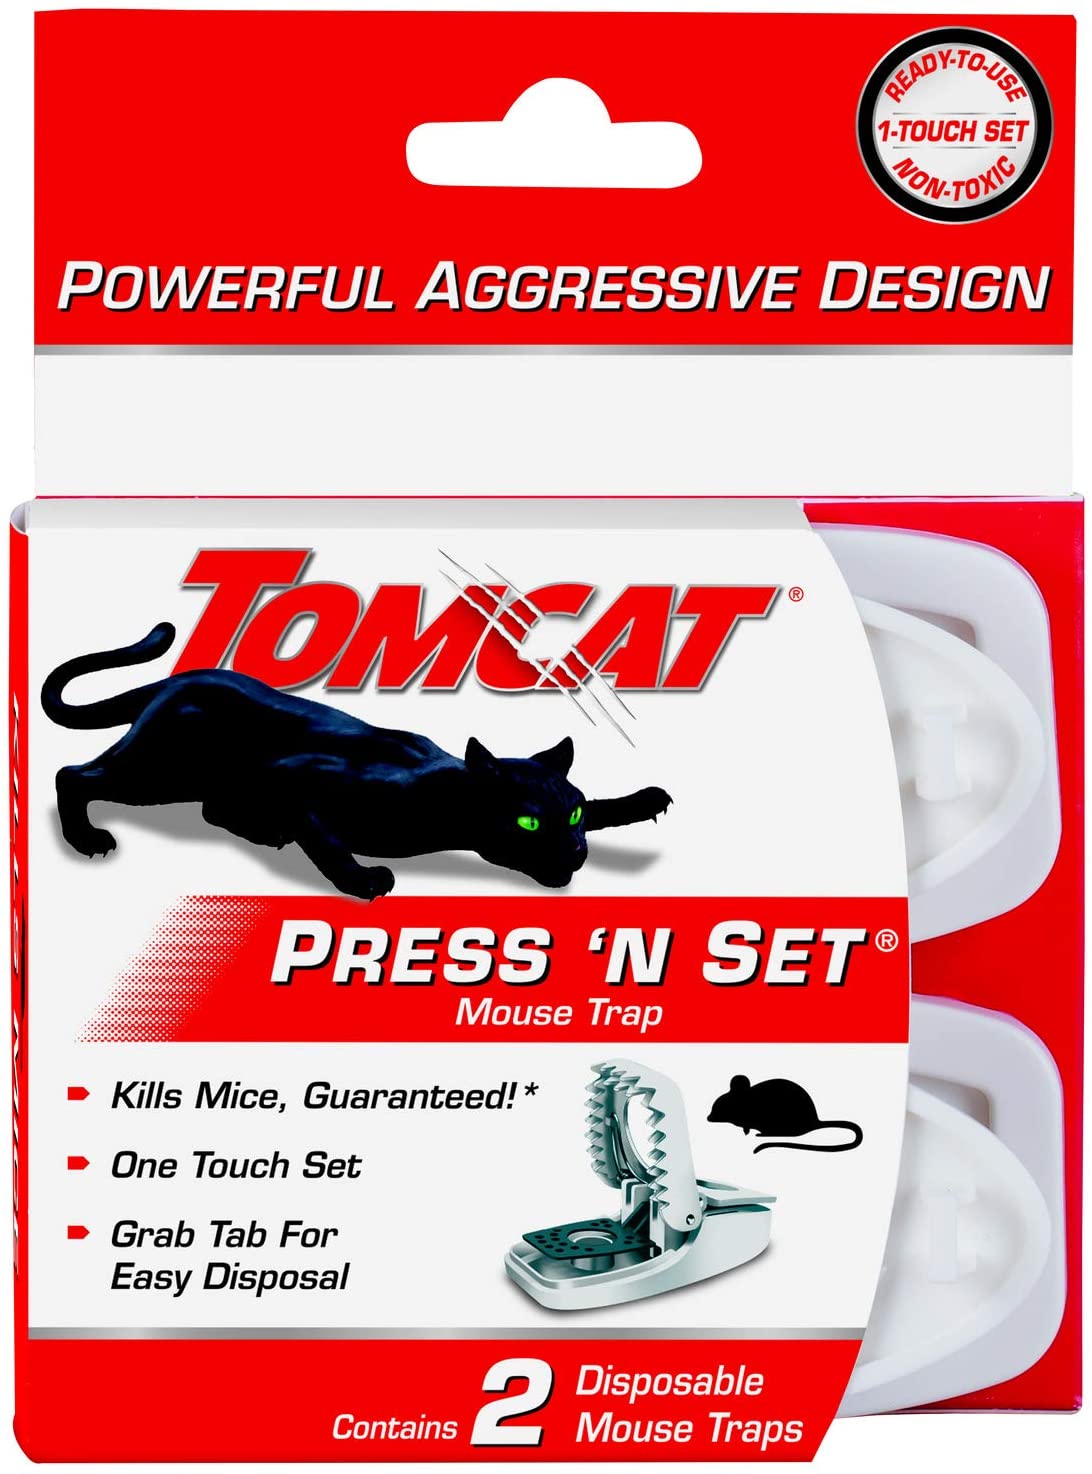 Tomcat Press 'n Set Mouse Trap, 2 Traps